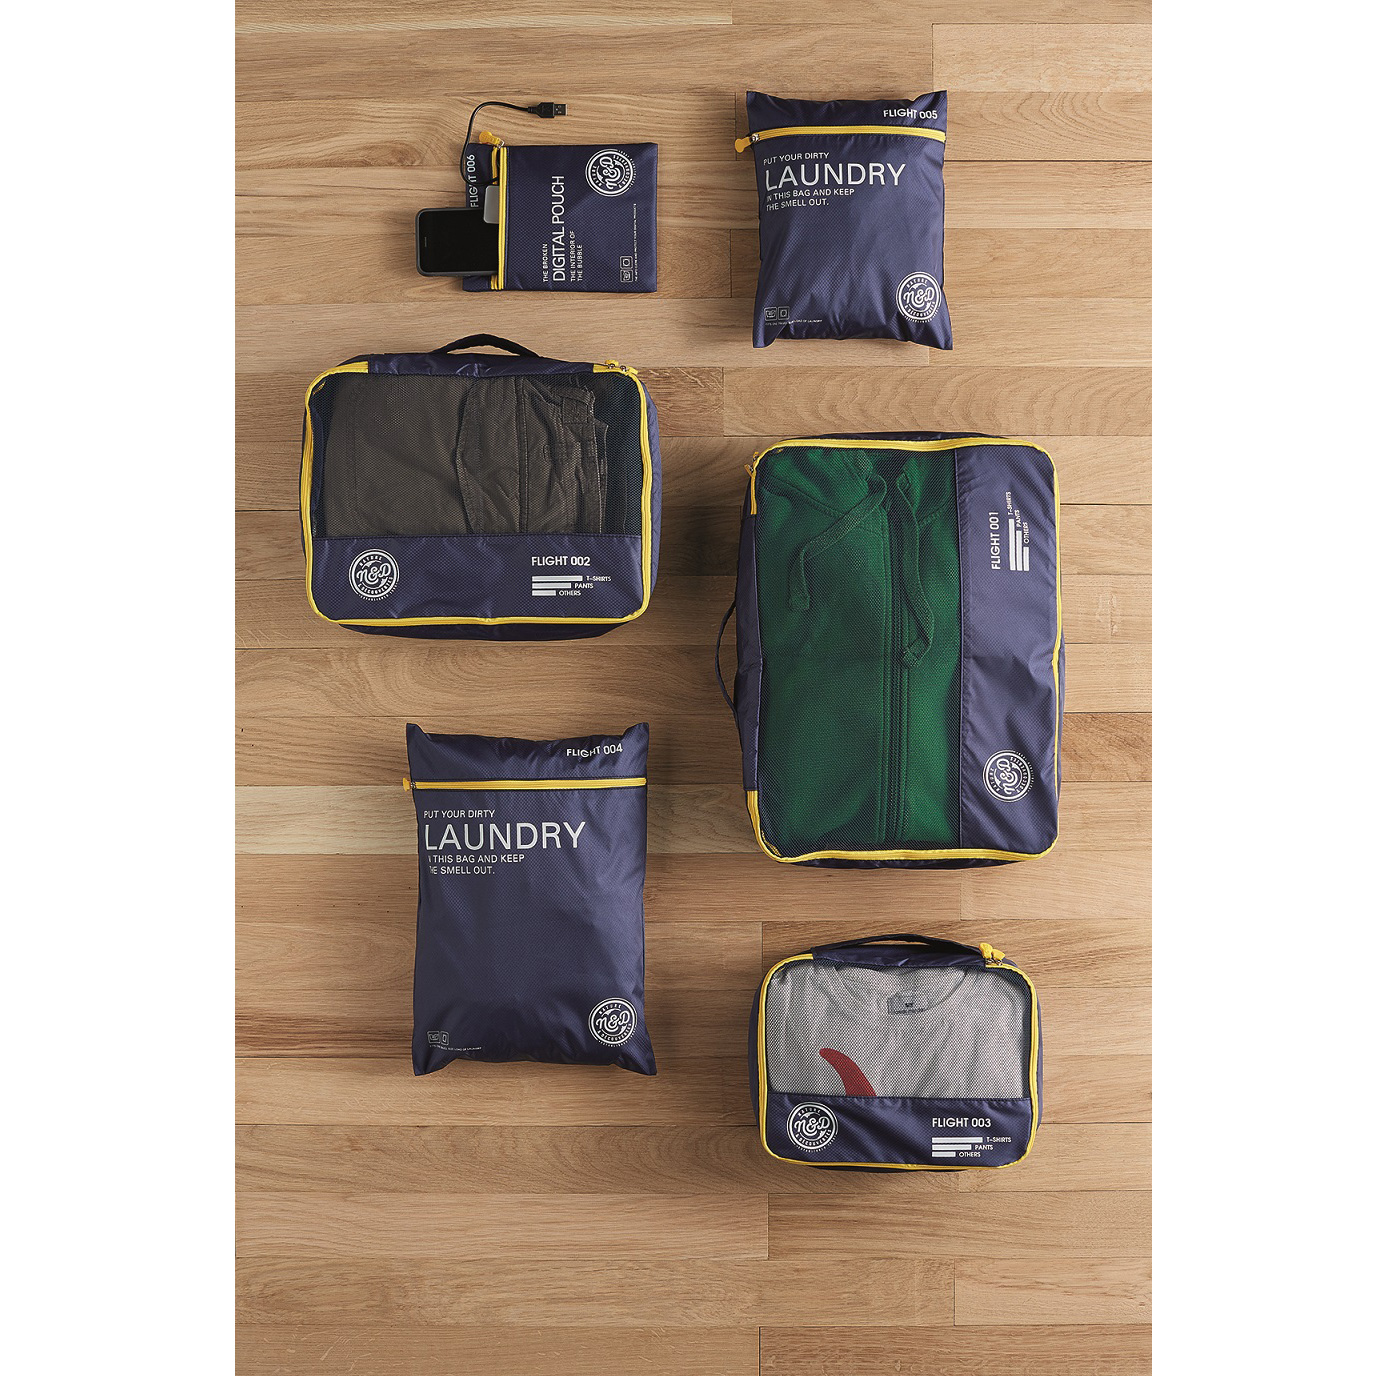 6 pièces ensemble de sacs de rangement de voyage pour vêtements organisateur  bien rangé armoire valise pochette sac organisateur de voyage, sac de  voyage, bagages, organisateur et rangement de valise, ensemble d' organisateur